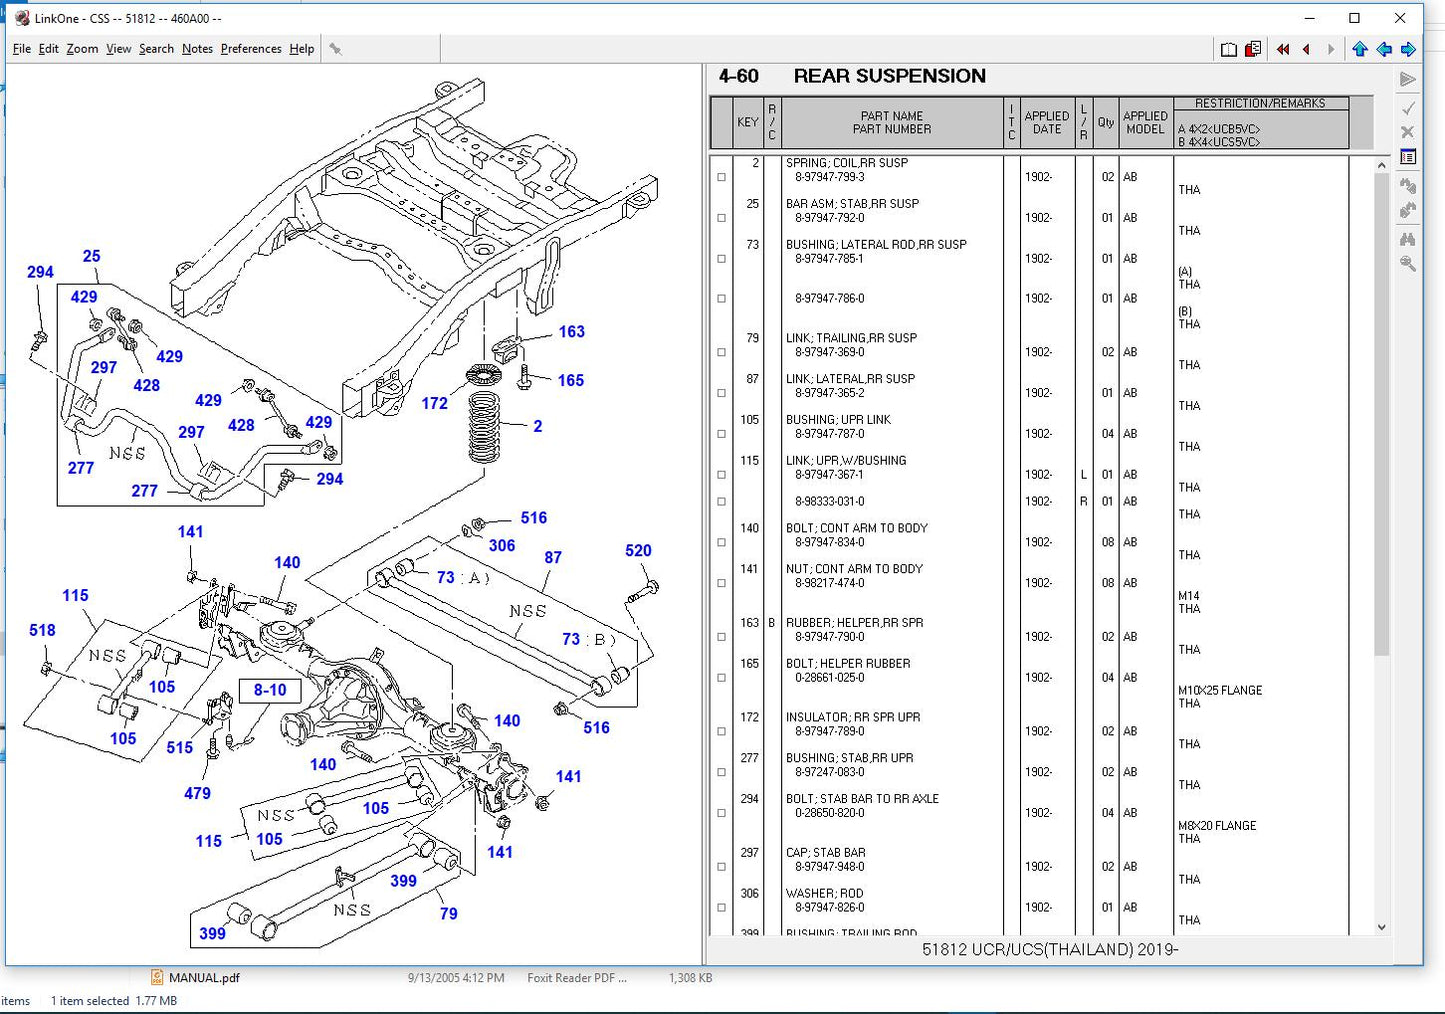 
                  
                    Isuzu CSS-NET Camiones y Motores Industriales EPC 2020- todos los modelos y s \ n manuales de piezas
                  
                